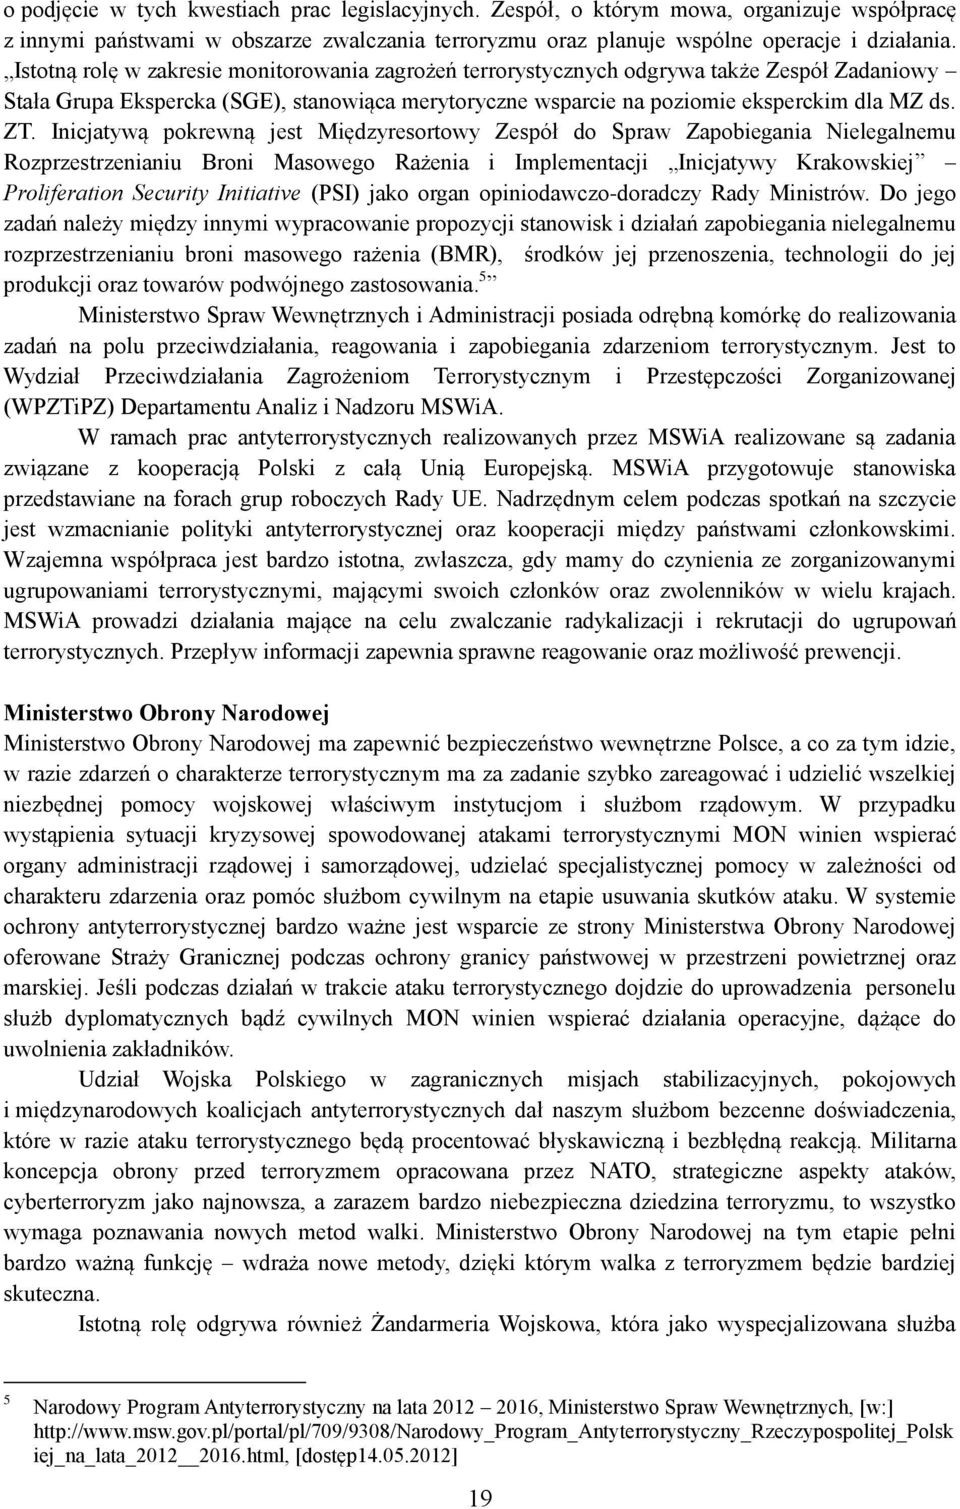 Inicjatywą pokrewną jest Międzyresortowy Zespół do Spraw Zapobiegania Nielegalnemu Rozprzestrzenianiu Broni Masowego Rażenia i Implementacji Inicjatywy Krakowskiej Proliferation Security Initiative